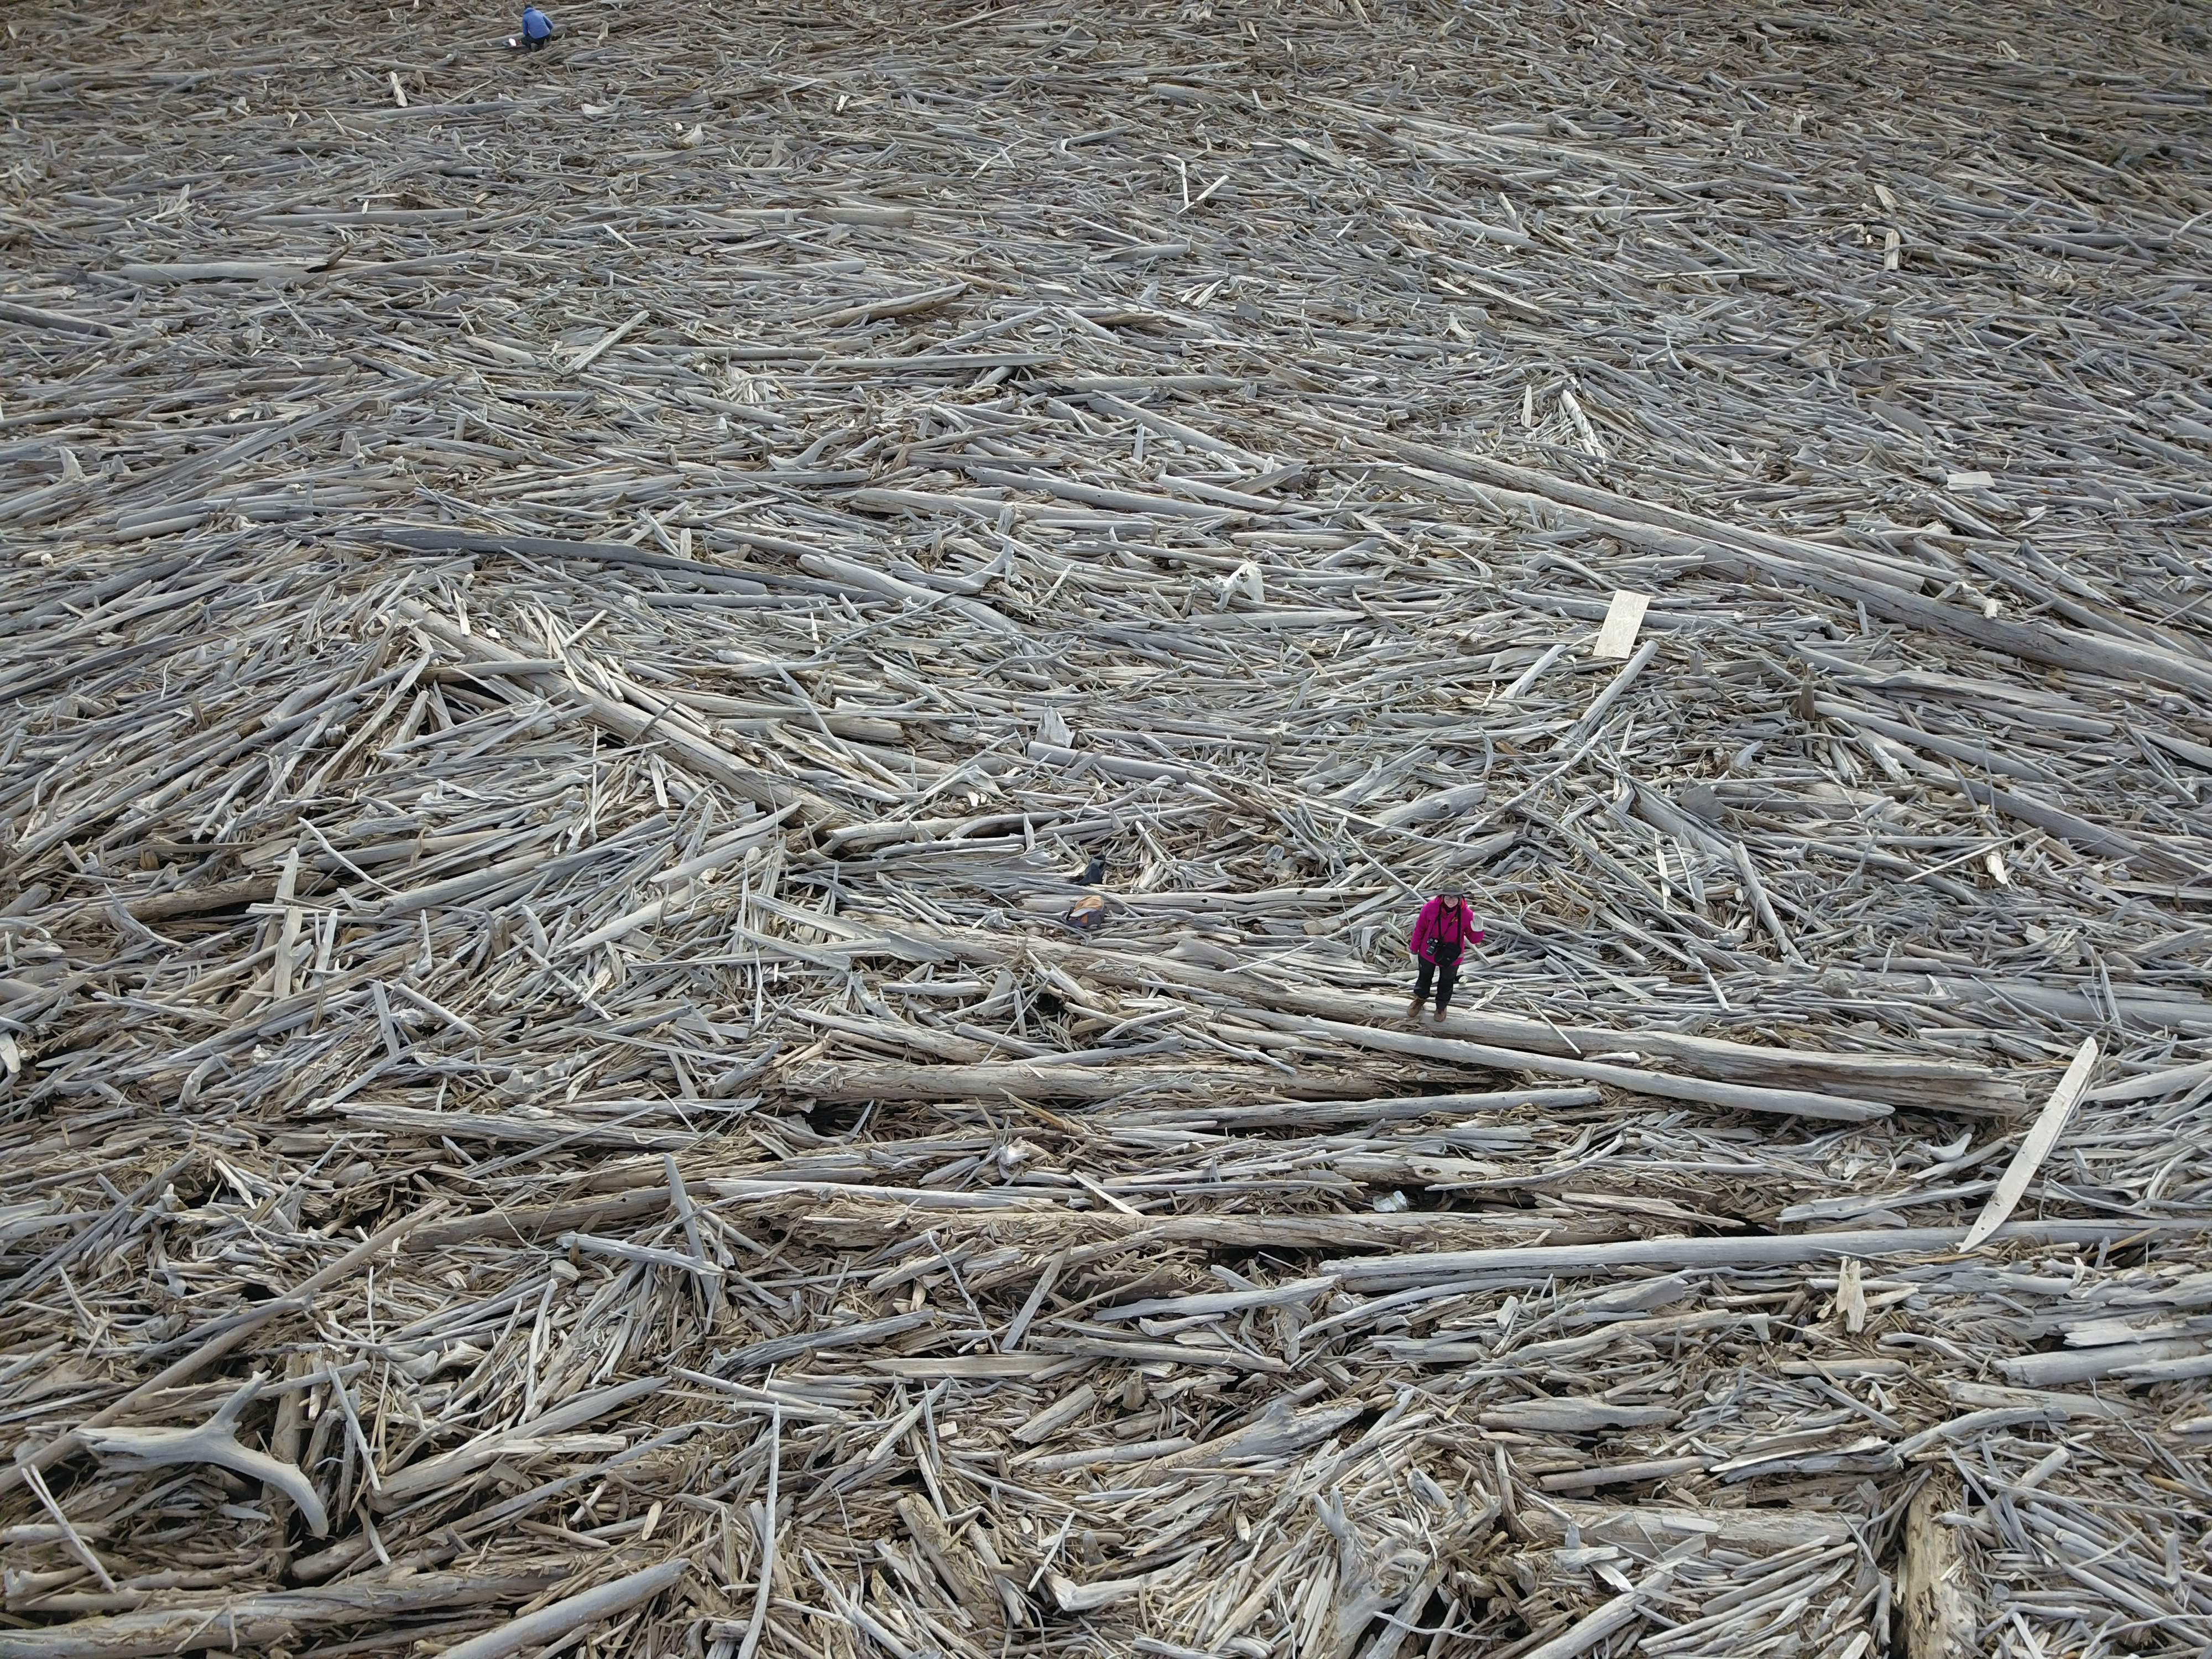 Alicia Sendrowski, investigadora de Logjam, de pie sobre una enorme pila de troncos en el norte de Canadá que está atrapando tanto carbono como el que emiten 2,5 millones de coches en un año (Natalie Kramer)